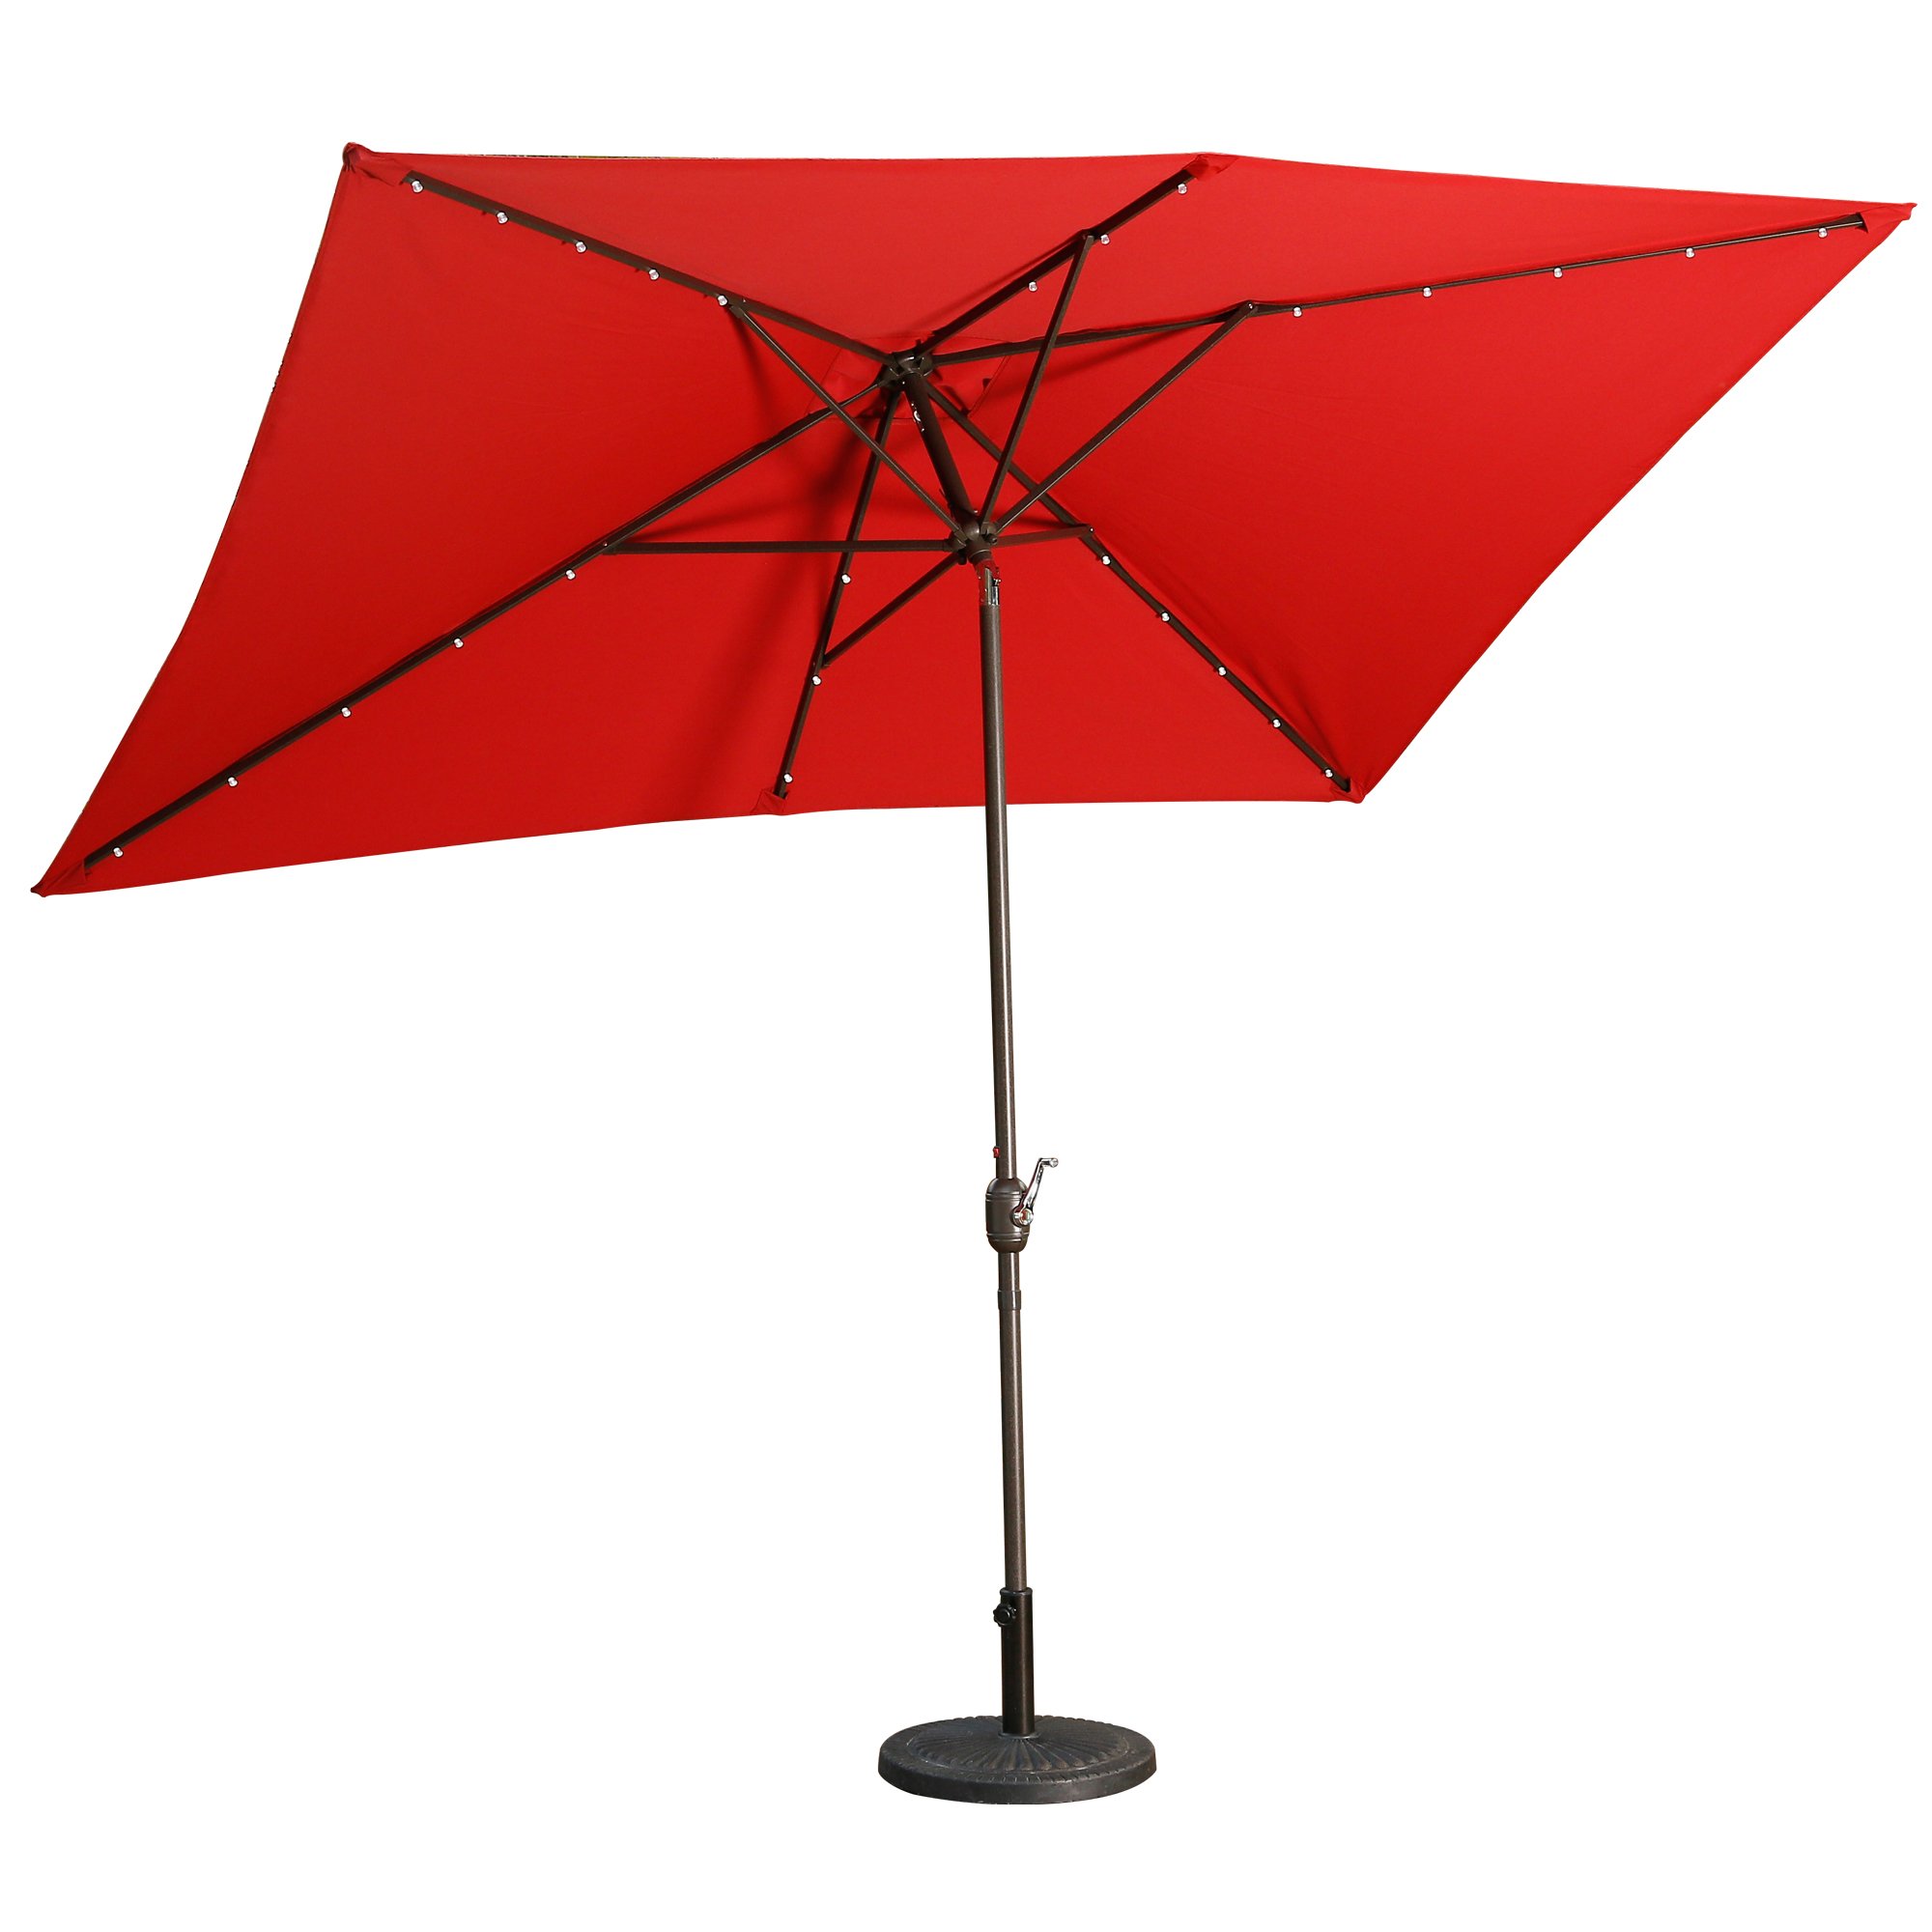 Casainc 10 ft. Aluminum Rectanglar Market LED Patio Umbrella in Red-CASAINC